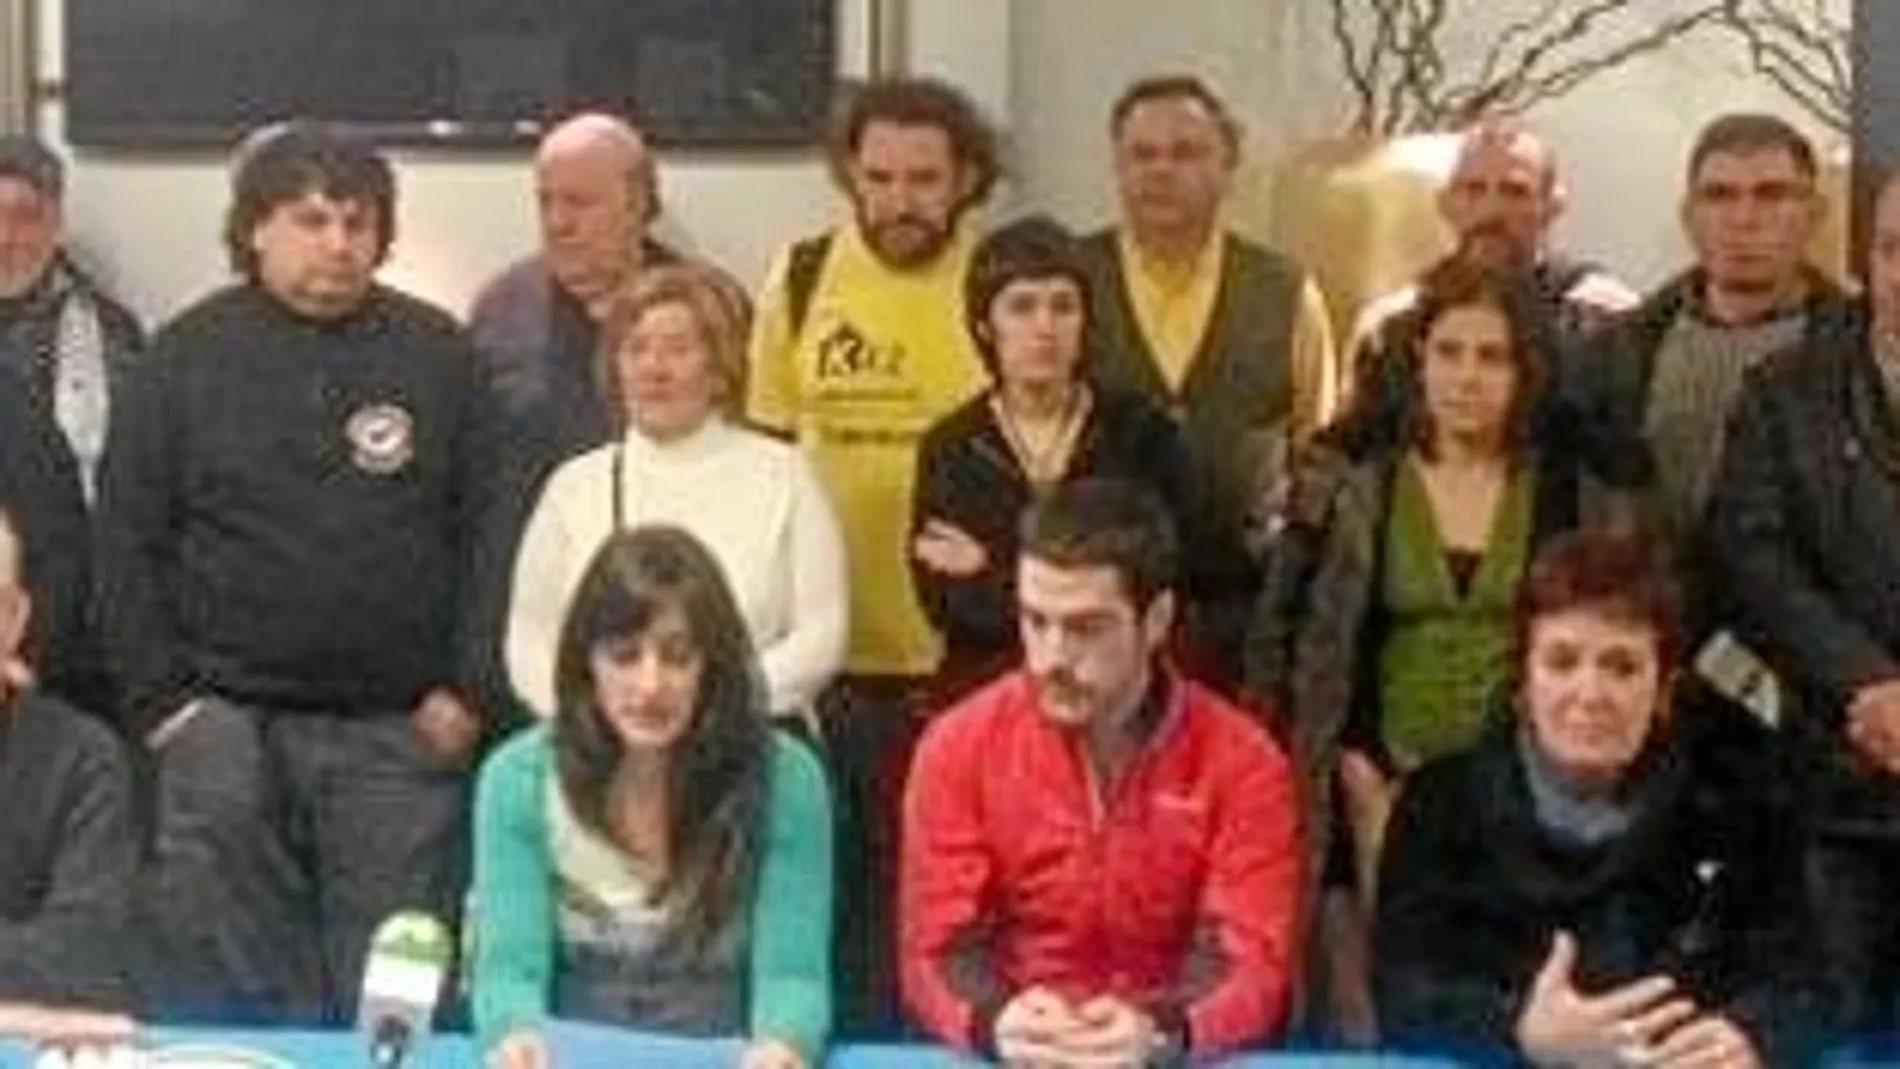 Los miembros de la PAH de Vizcaya Imanol Arnaiz y Adolfo Gómez asistieron en diciembre a una rueda de prensa en favor de la marcha de Herrira, a la que también acudió la coordinadora de STOP Desahucios Vizcaya, Marta Uriarte